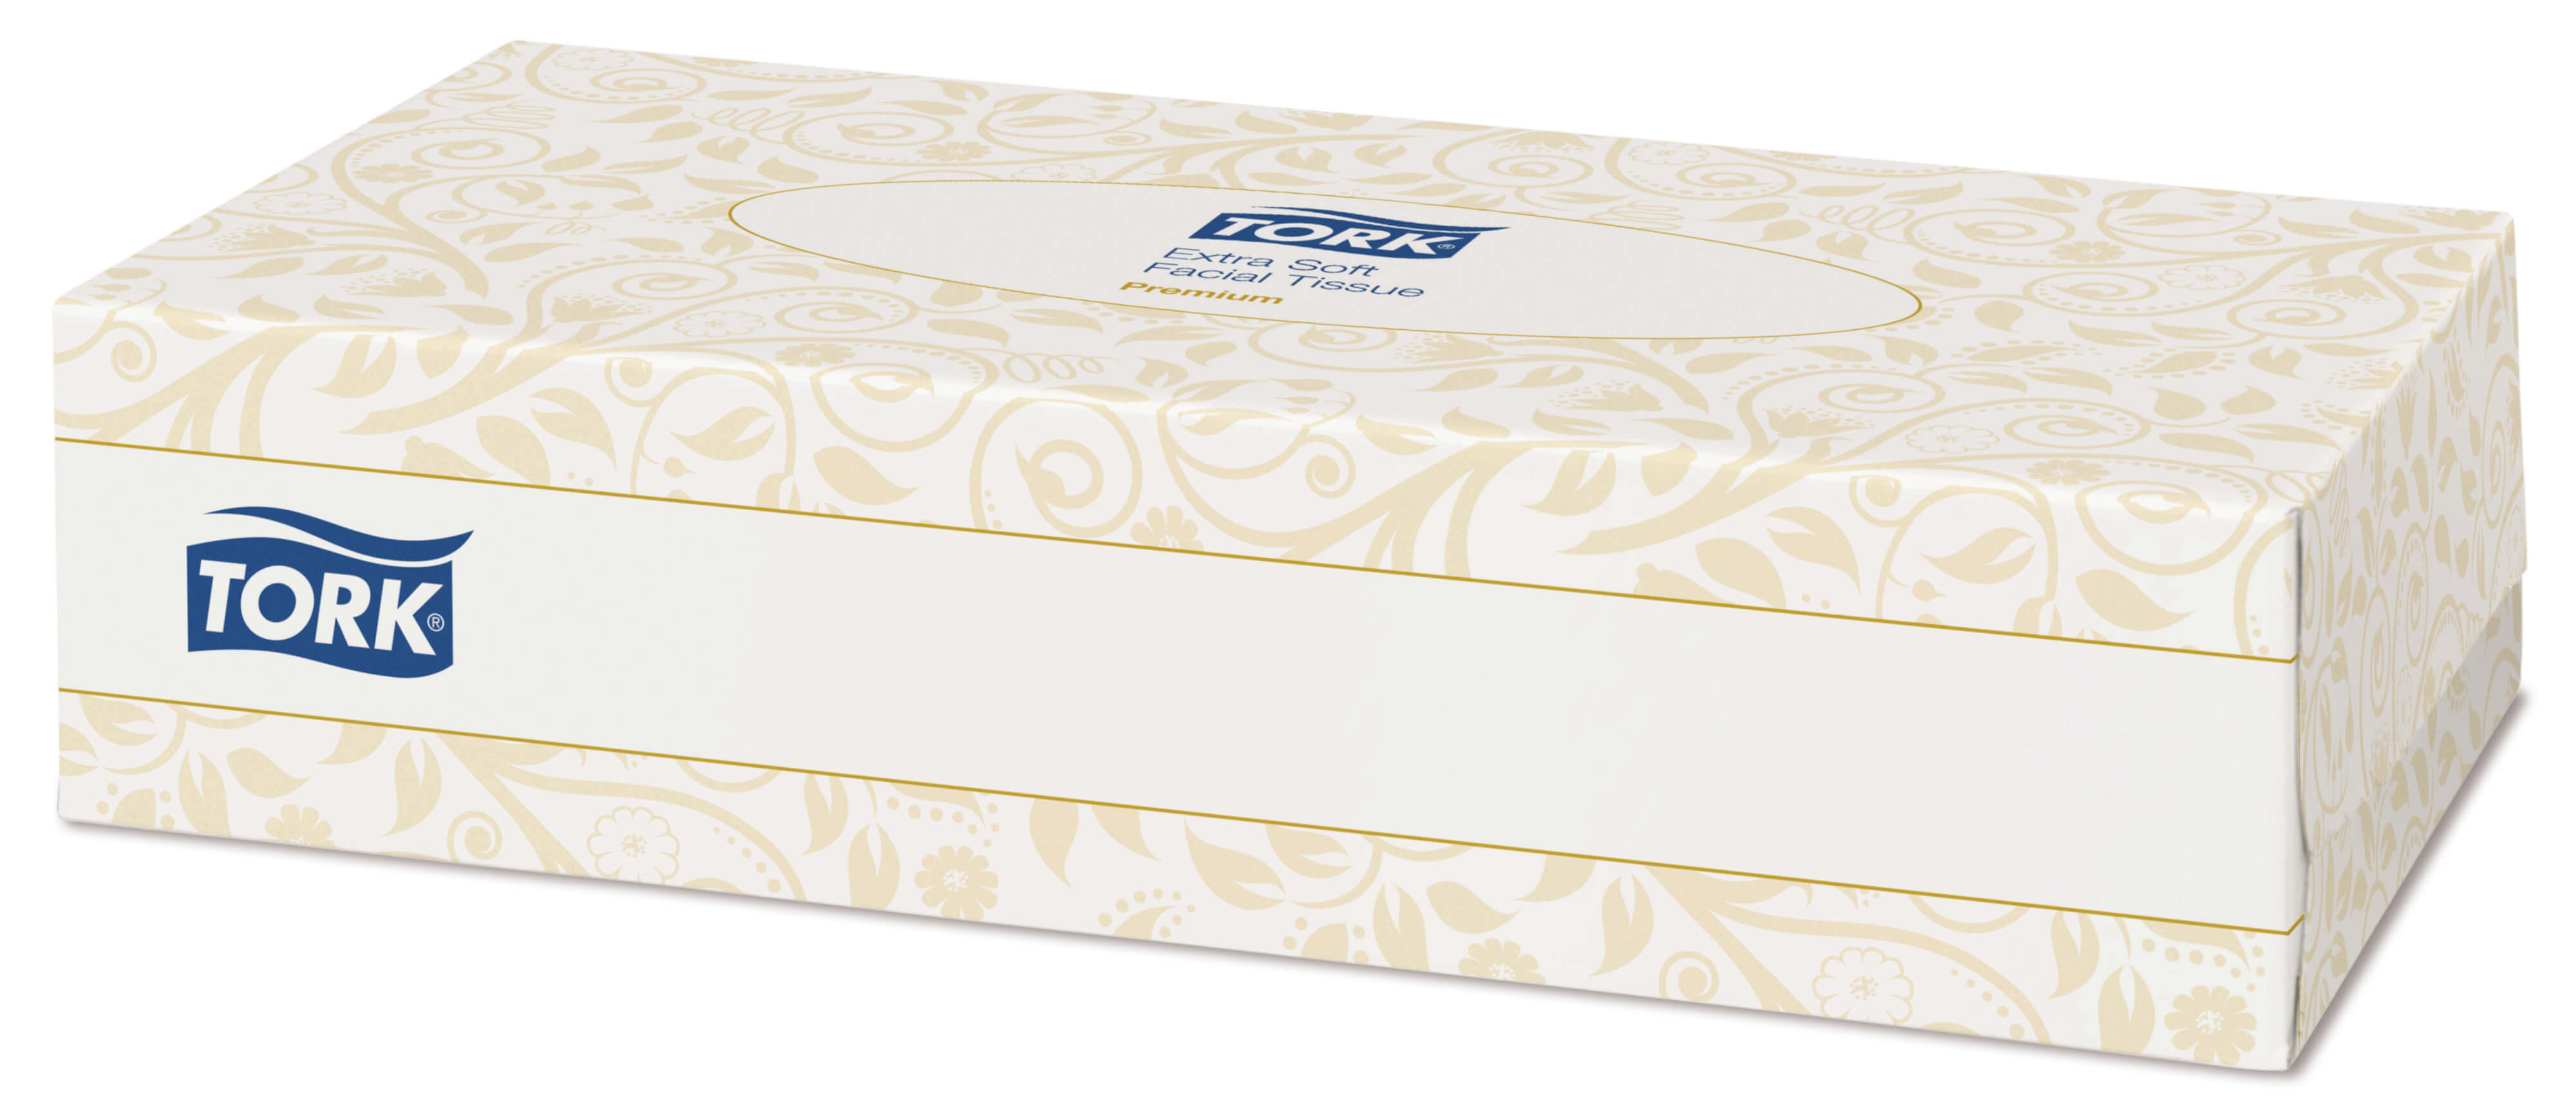 Косметические ультрамягкие салфетки для лица в упаковке Tork Premium, 100 листов